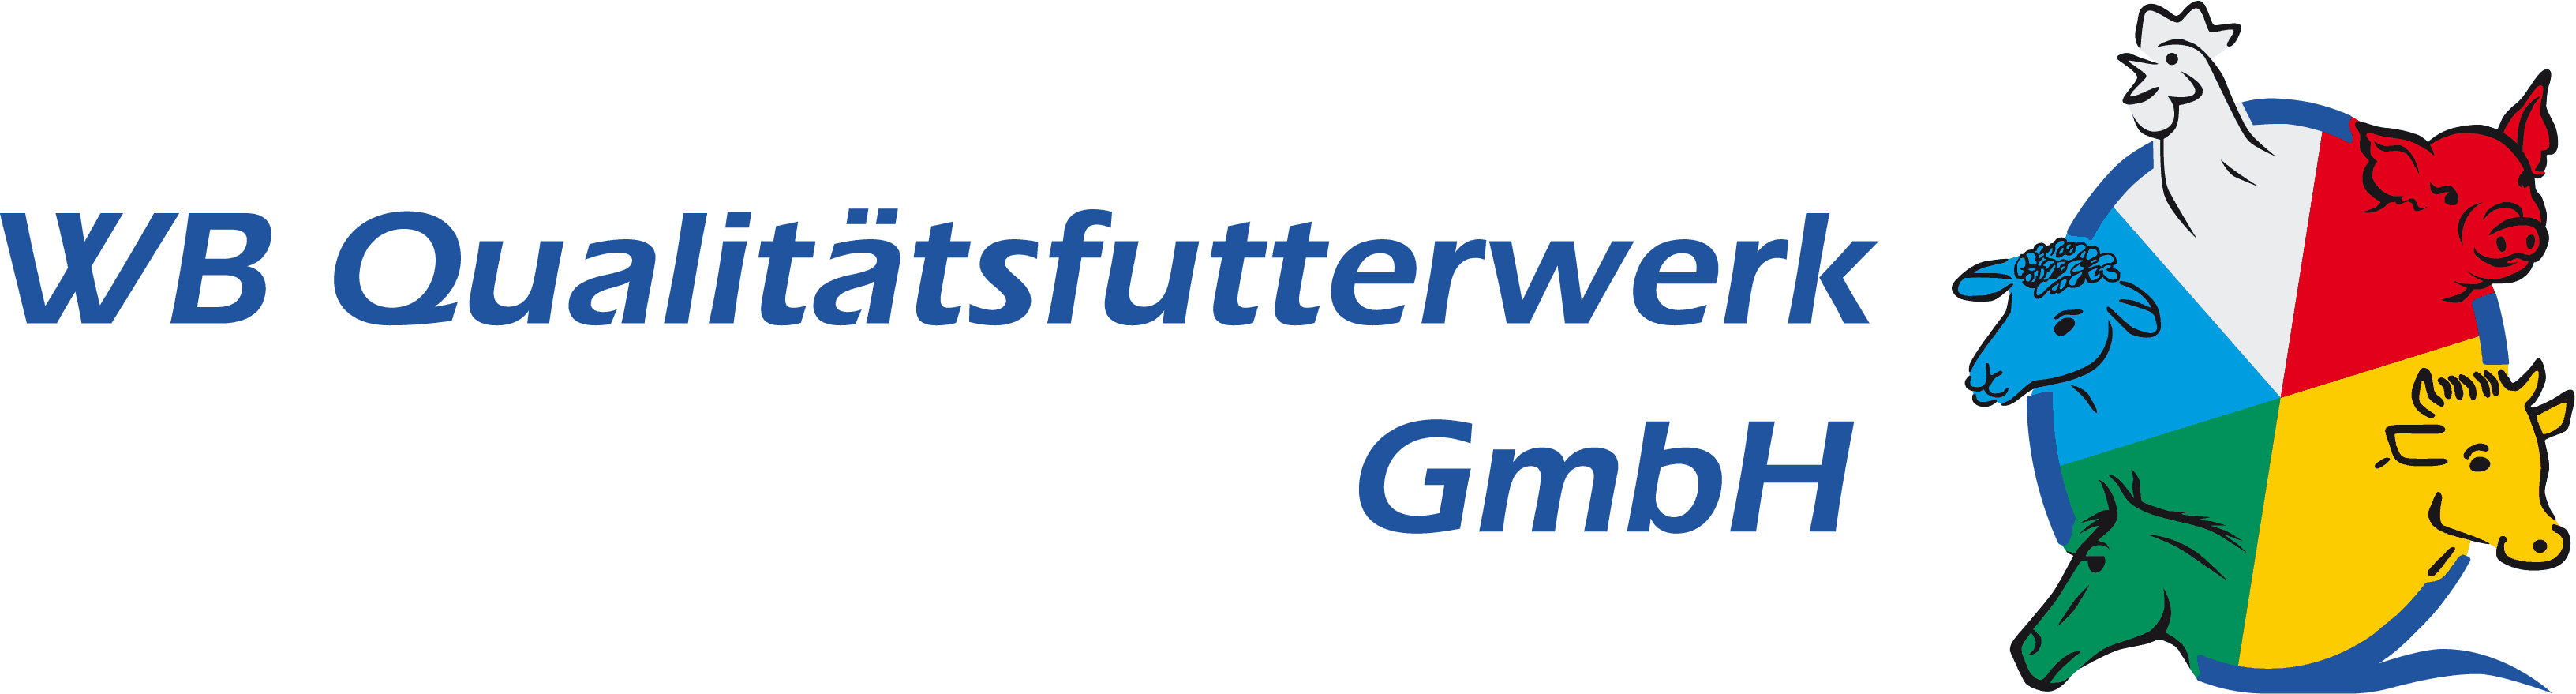 WB Qualitätsfutterwerk GmbH - Ihr Lieferant für gentechnikfreies Mischfuttermittel